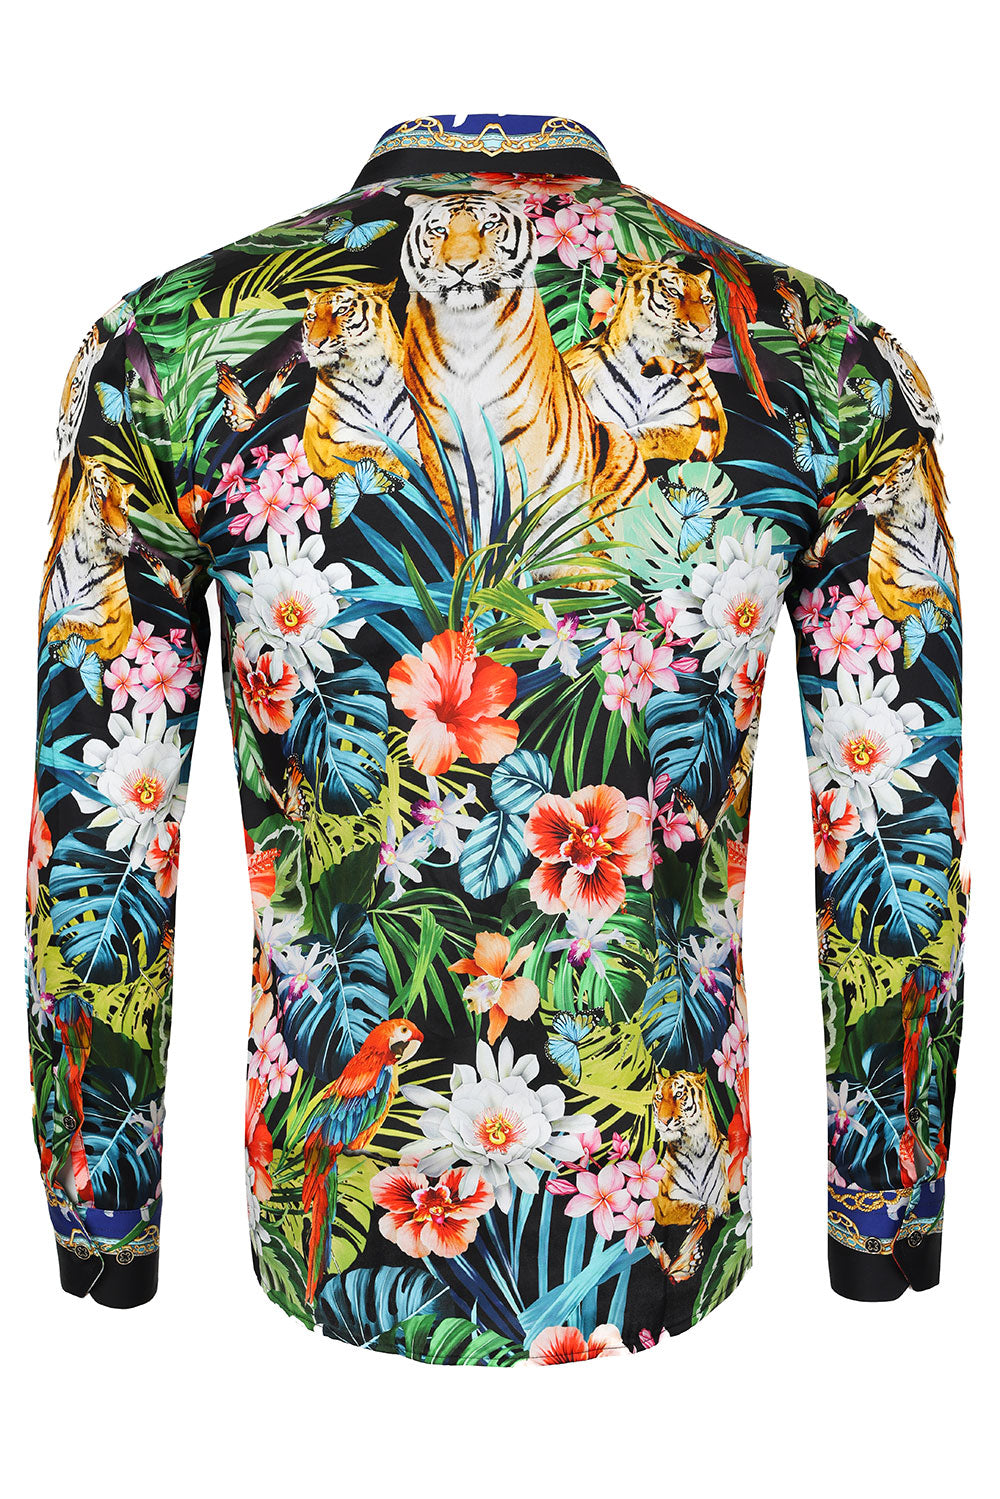 Barabas Men's Tiger Parrot Floral Button Down Dress Shirts 2SP37